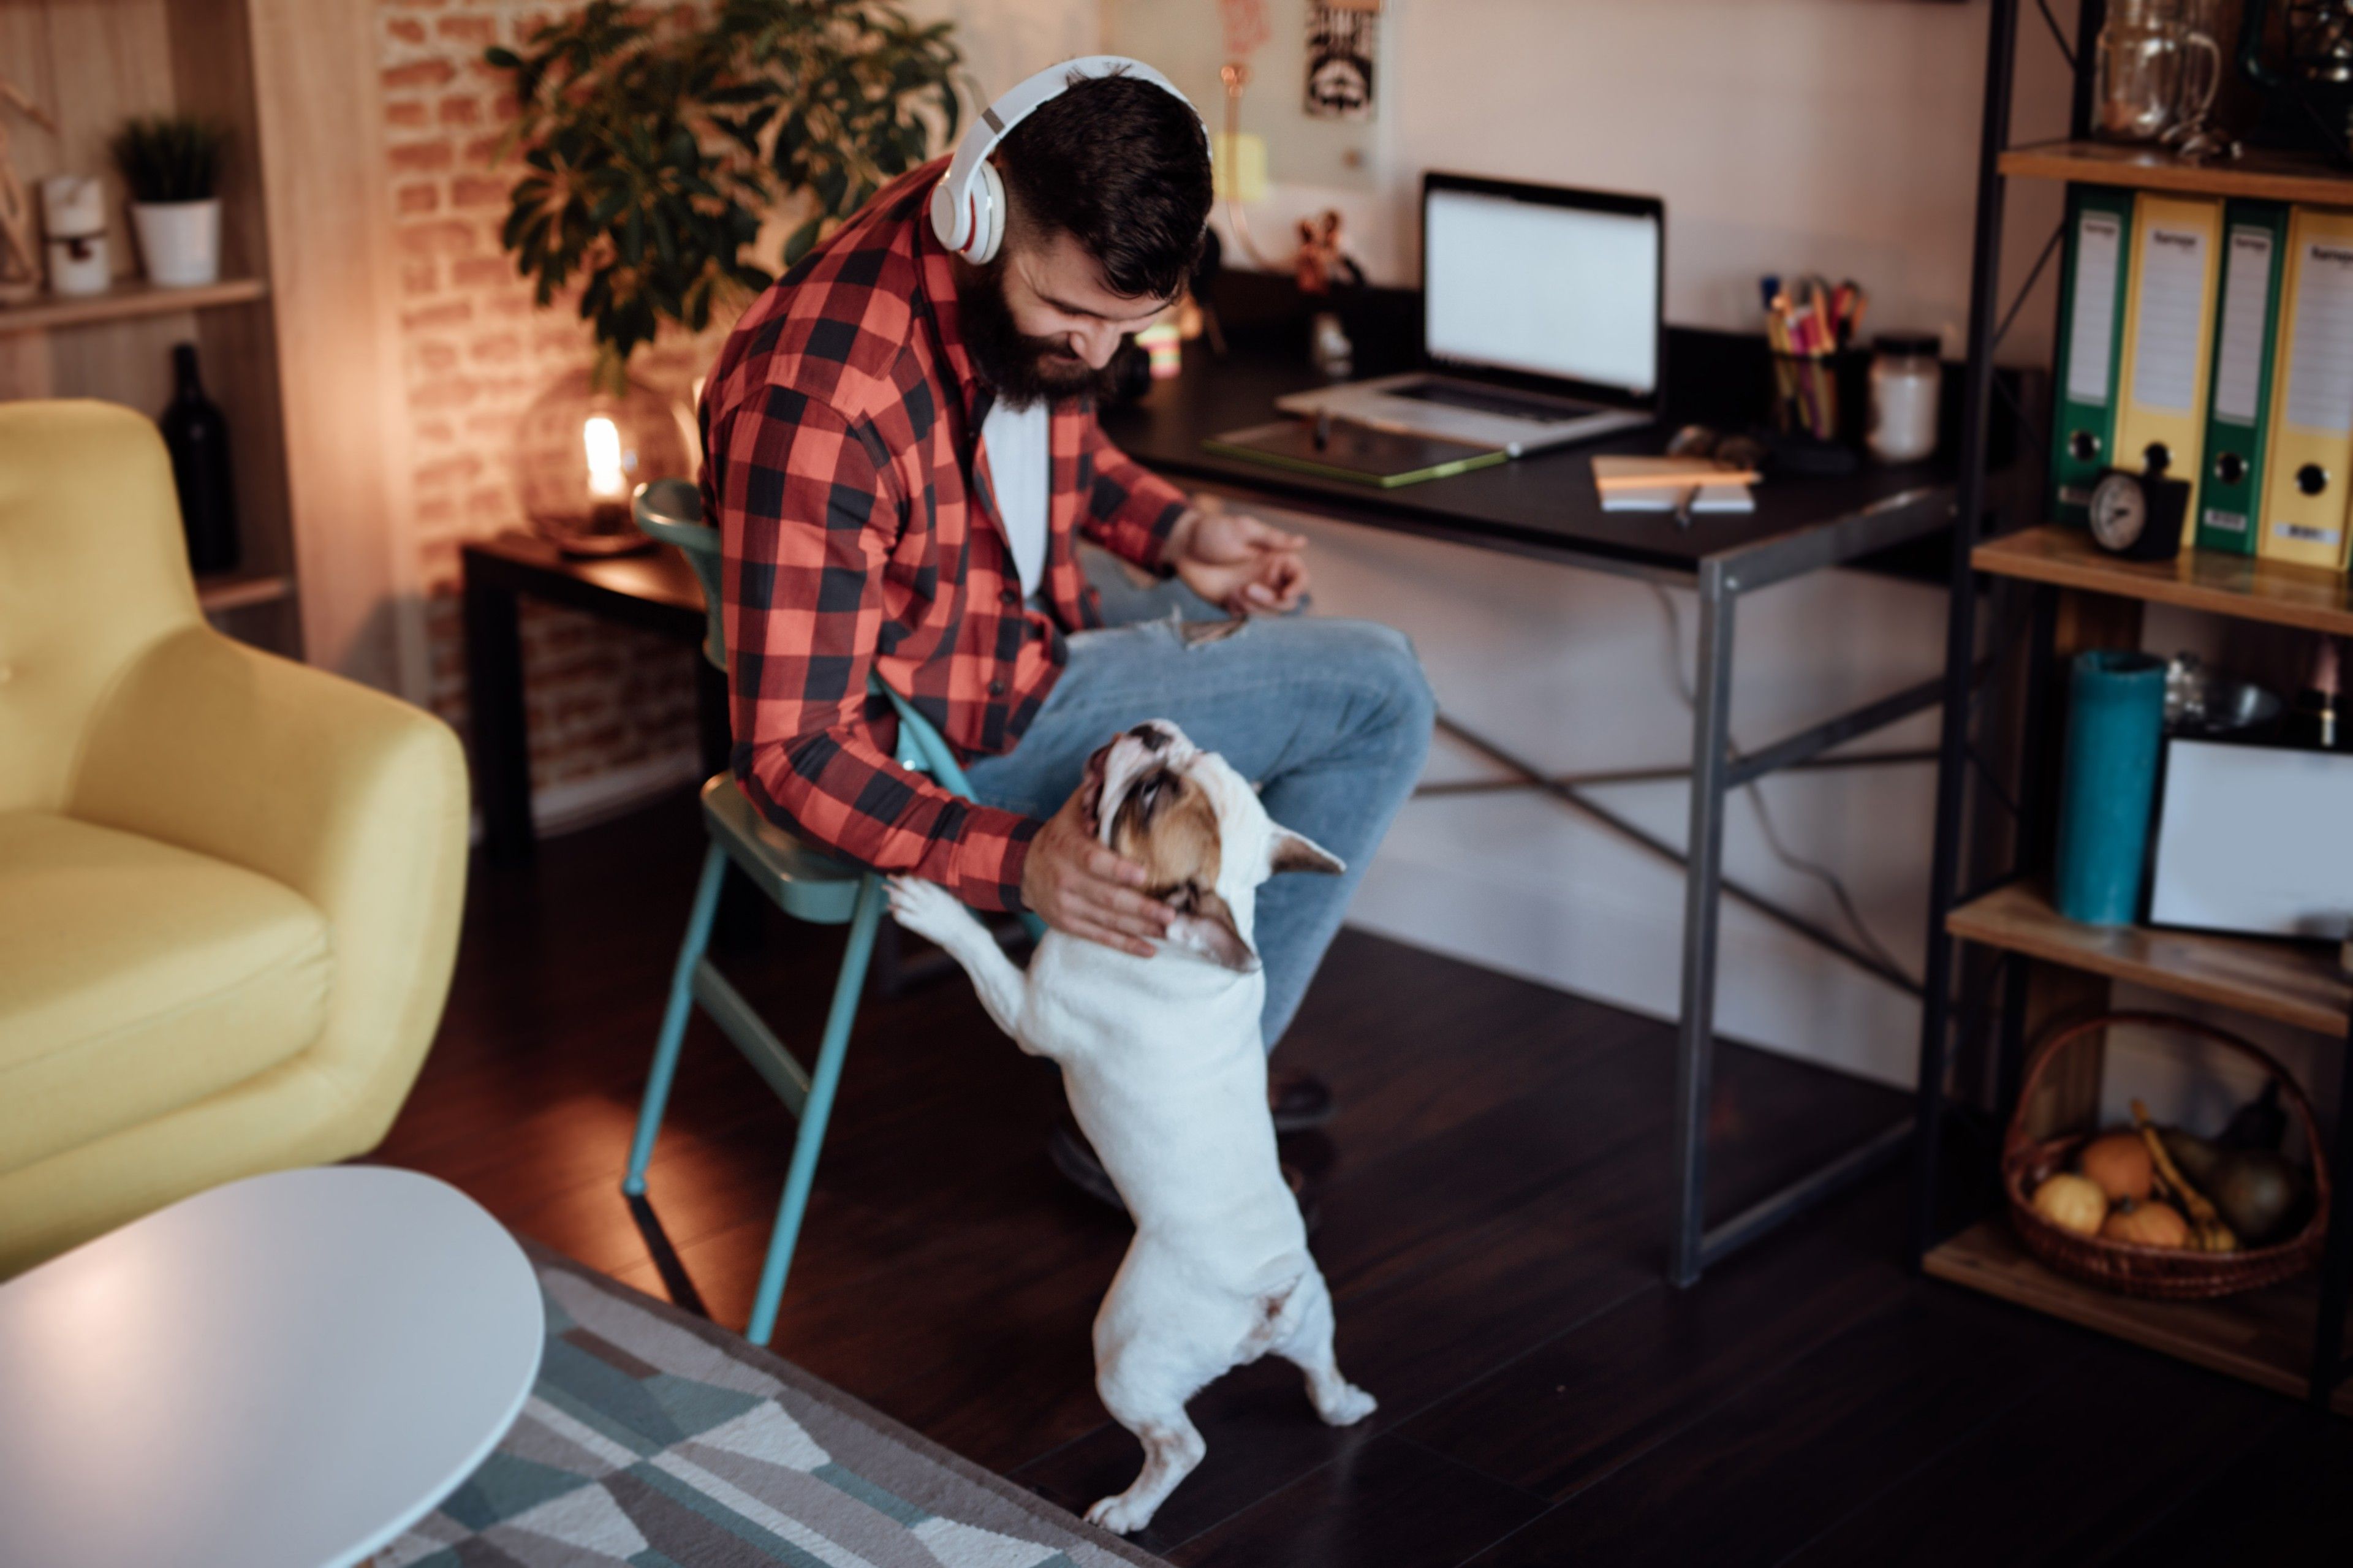 En fjernarbejder nyder at arbejde derhjemme og være sammen med sine kæledyr under arbejdet